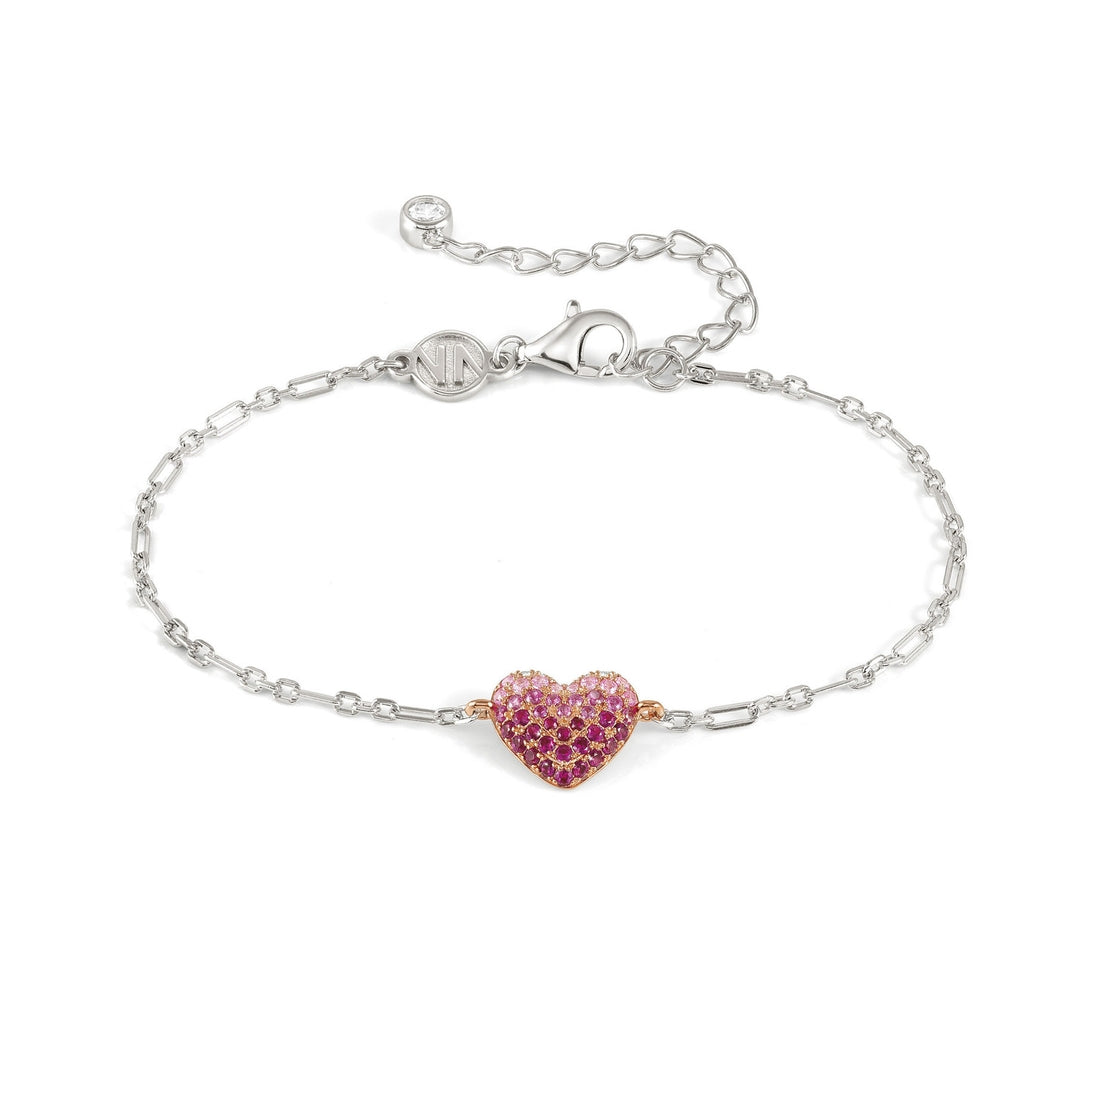 Bracciale Nomination Crysalis a cuore in argento con pavè di zirconi rosa